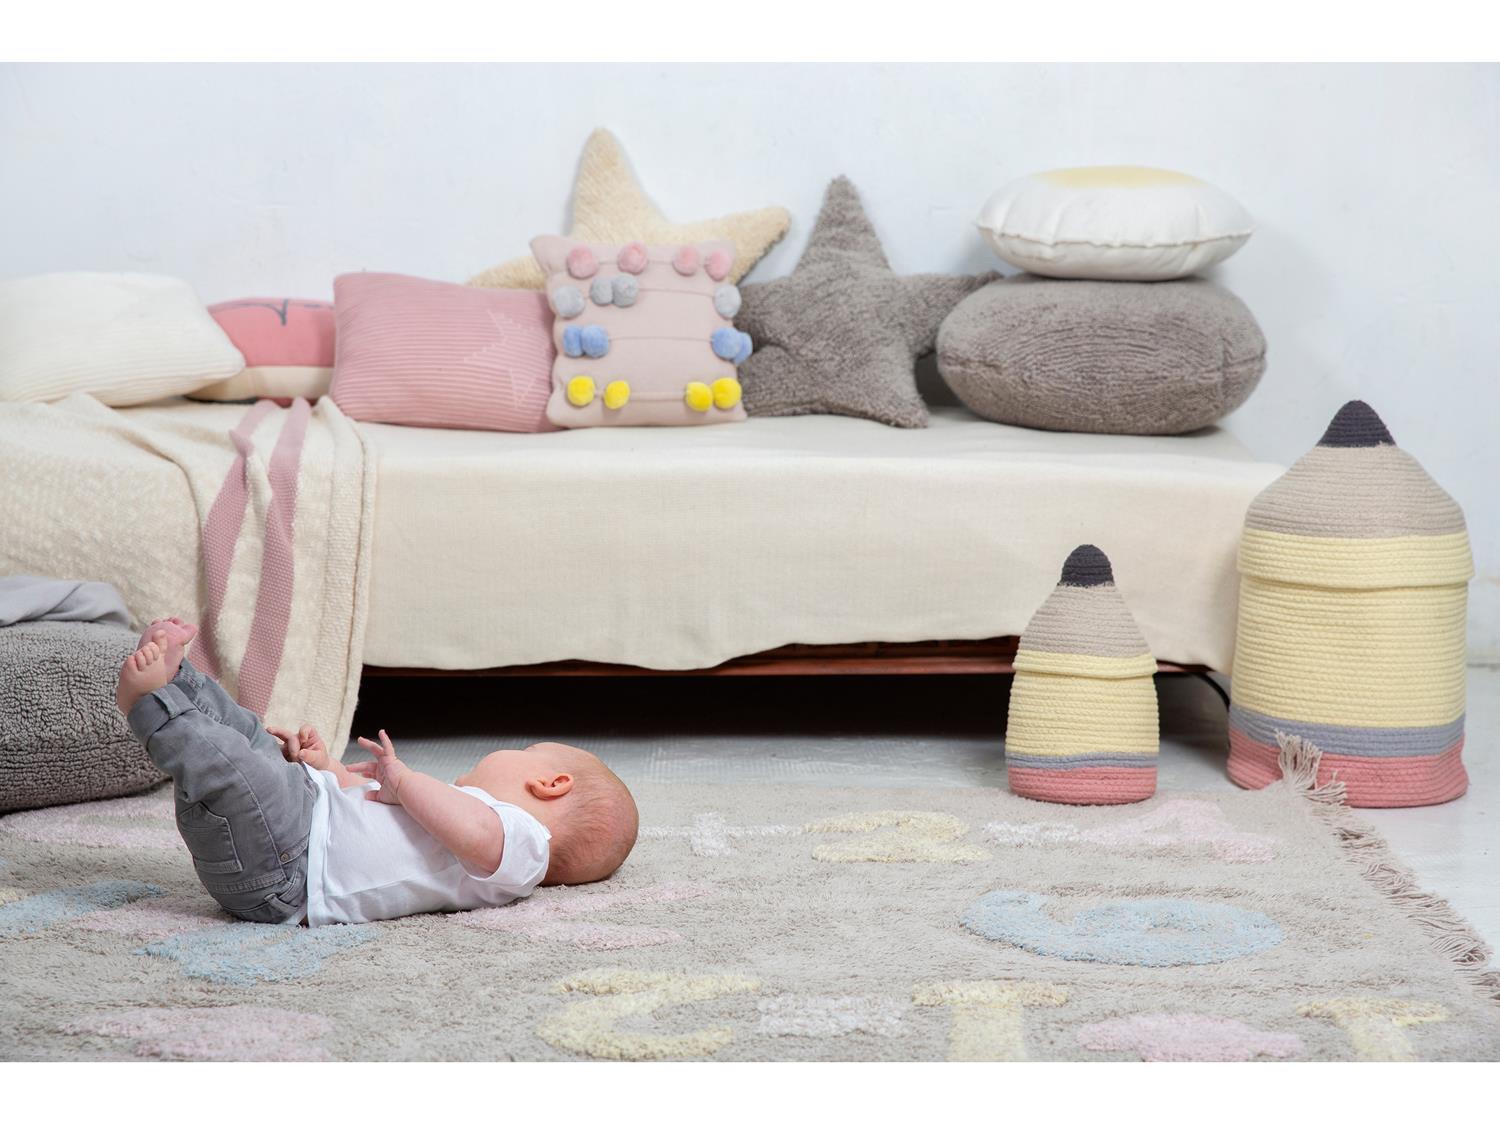 در این تصویر نوزادی را می‌بینیم که بر روی فرش ماشینی اناق کودک دراز کشیده و بازی می‌کند.